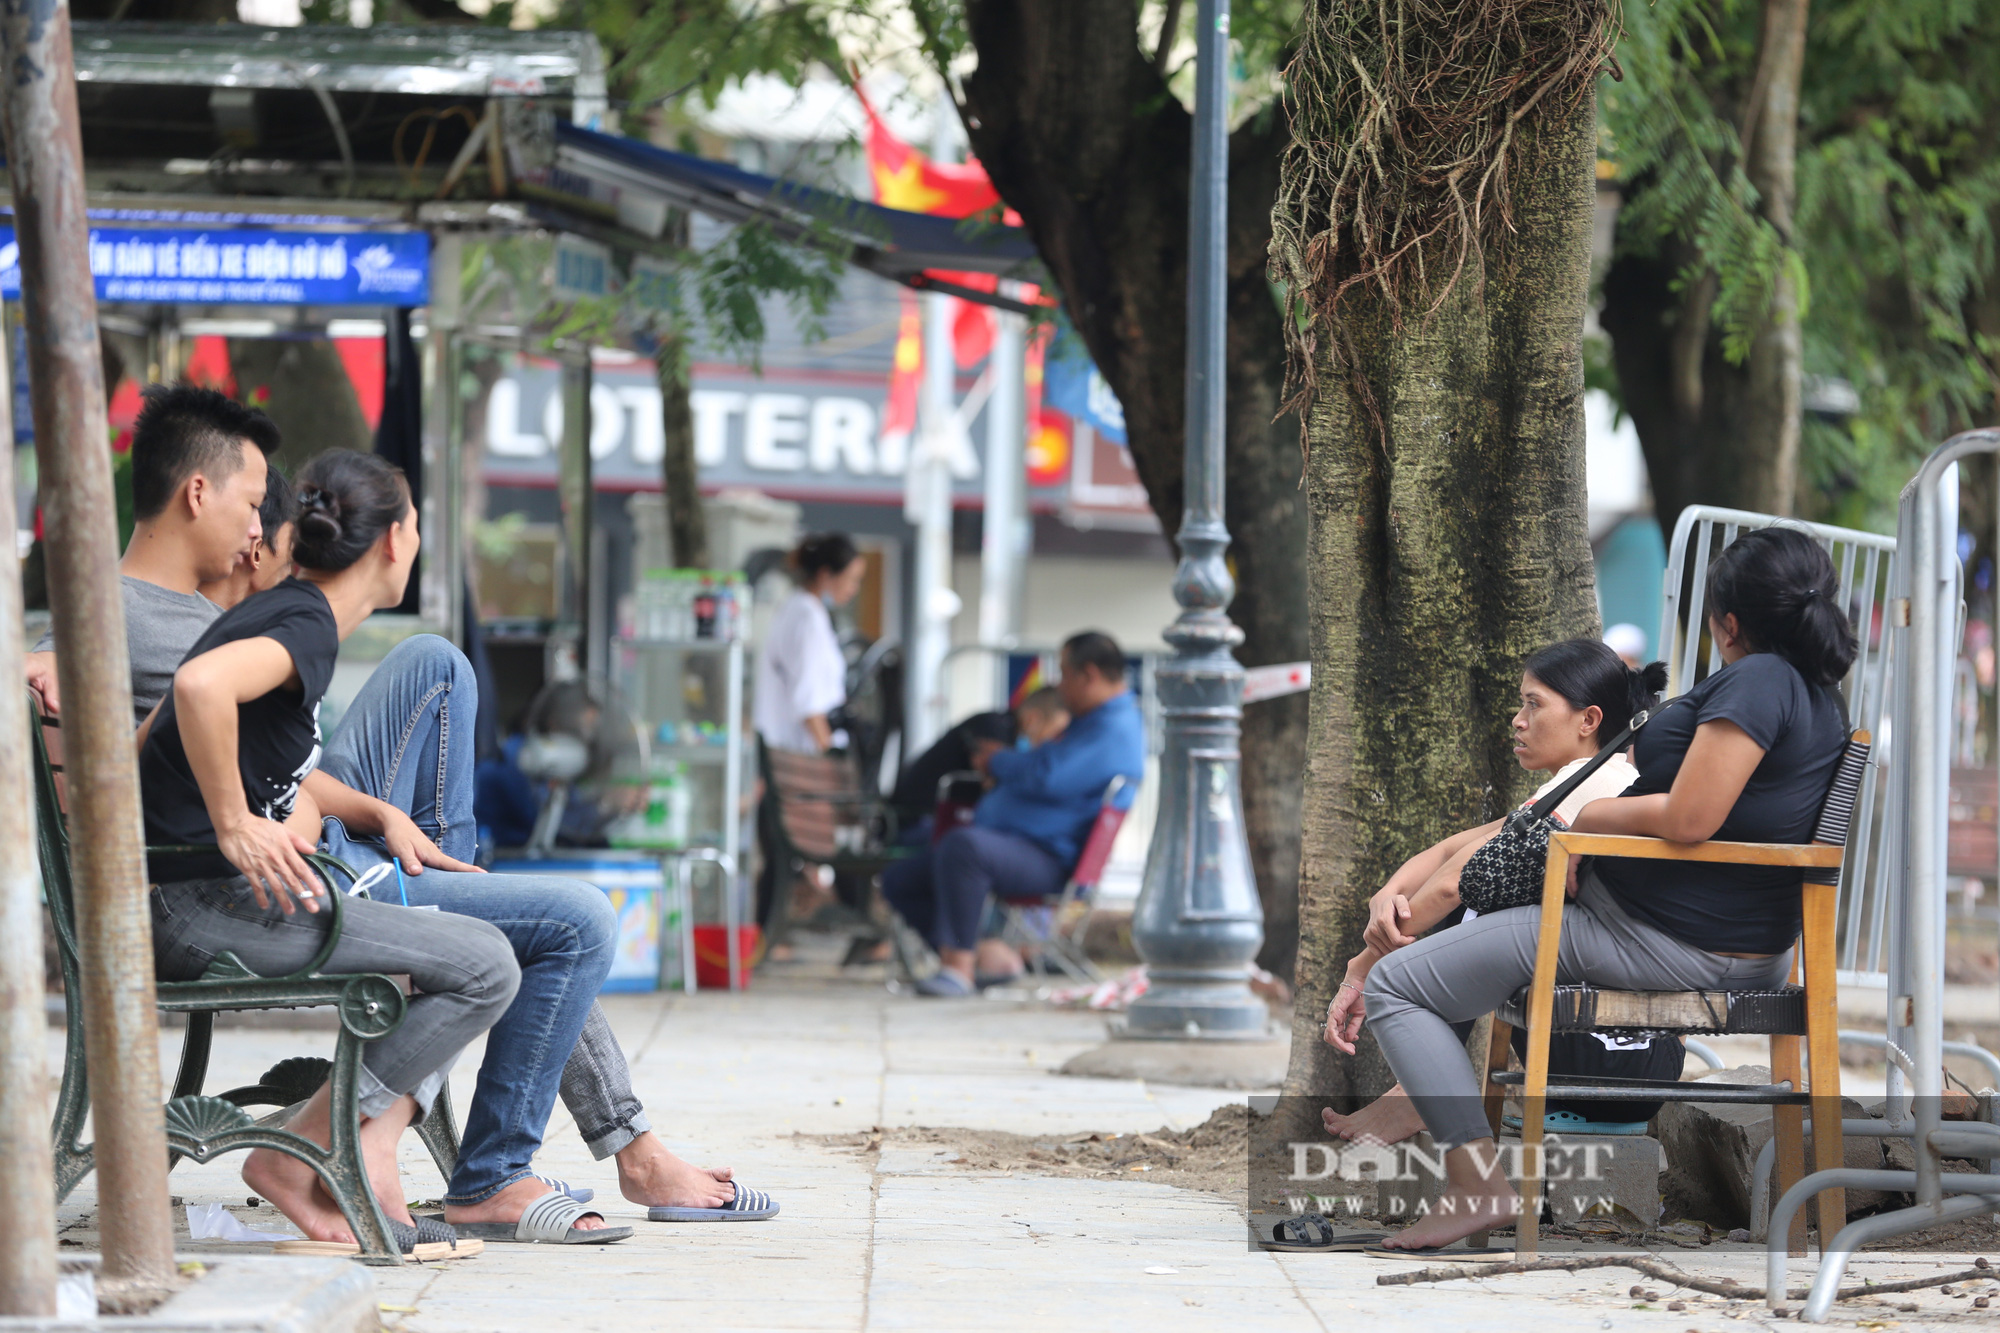 Hà Nội: Nhiều người dân vẫn không đeo khẩu trang tại nơi công cộng - Ảnh 5.